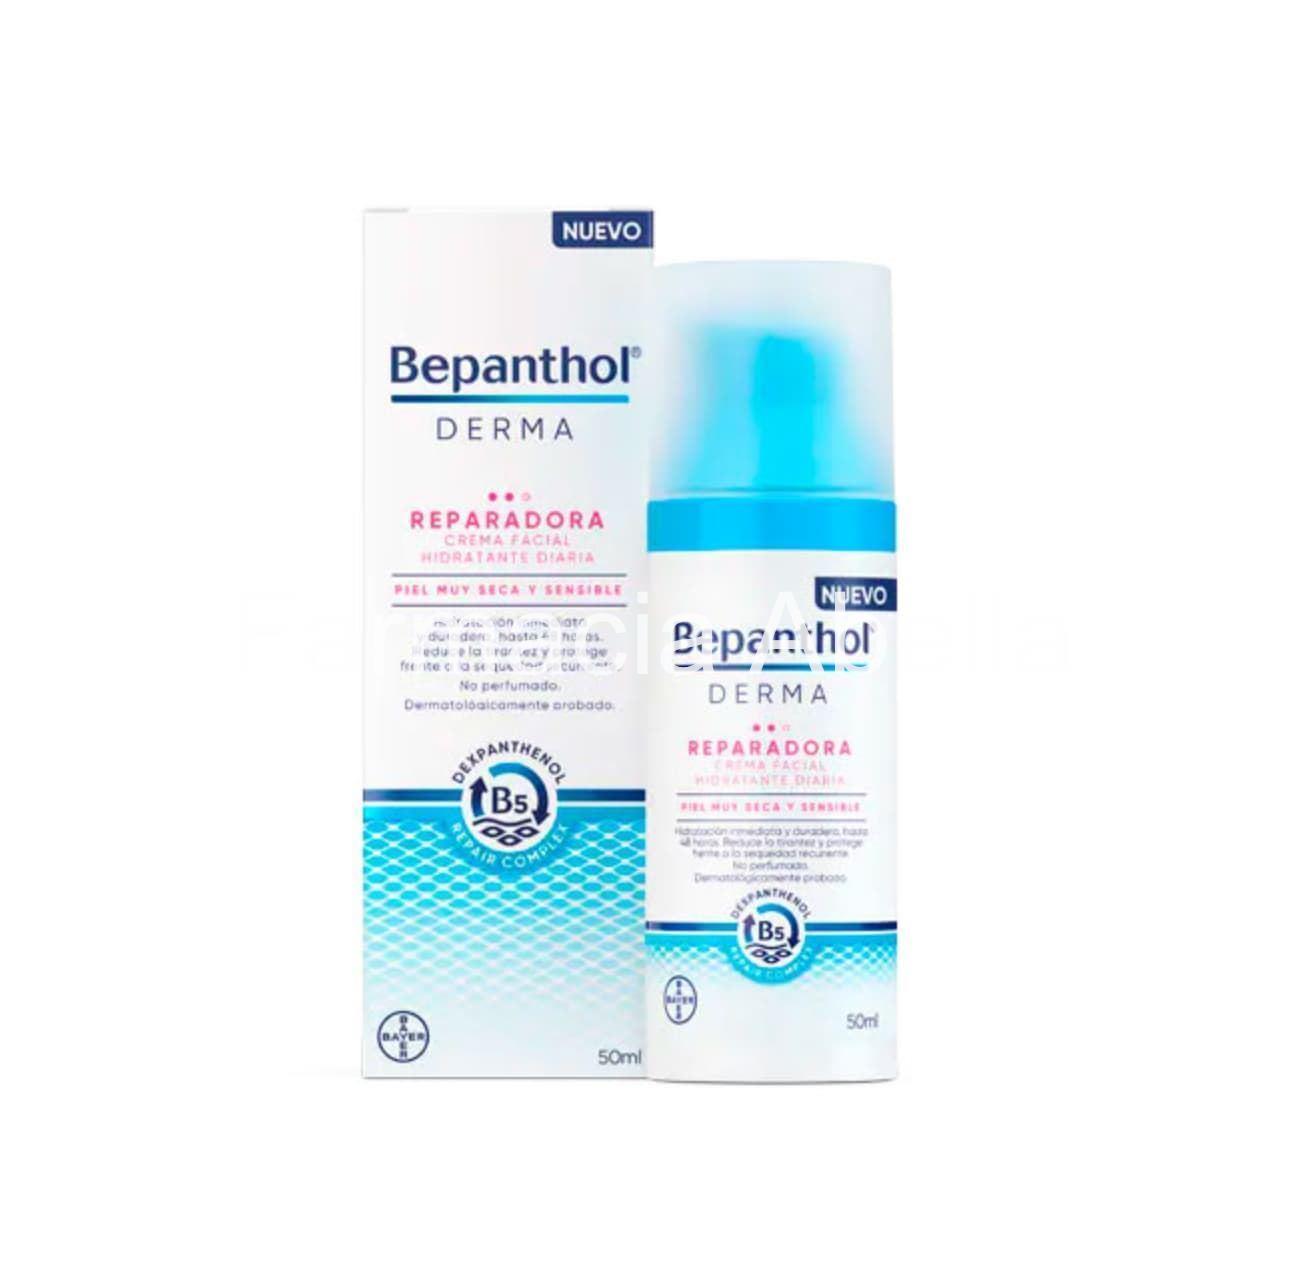 Bepanthol derma reparadora crema facial hidratante 50 ml - Imagen 1